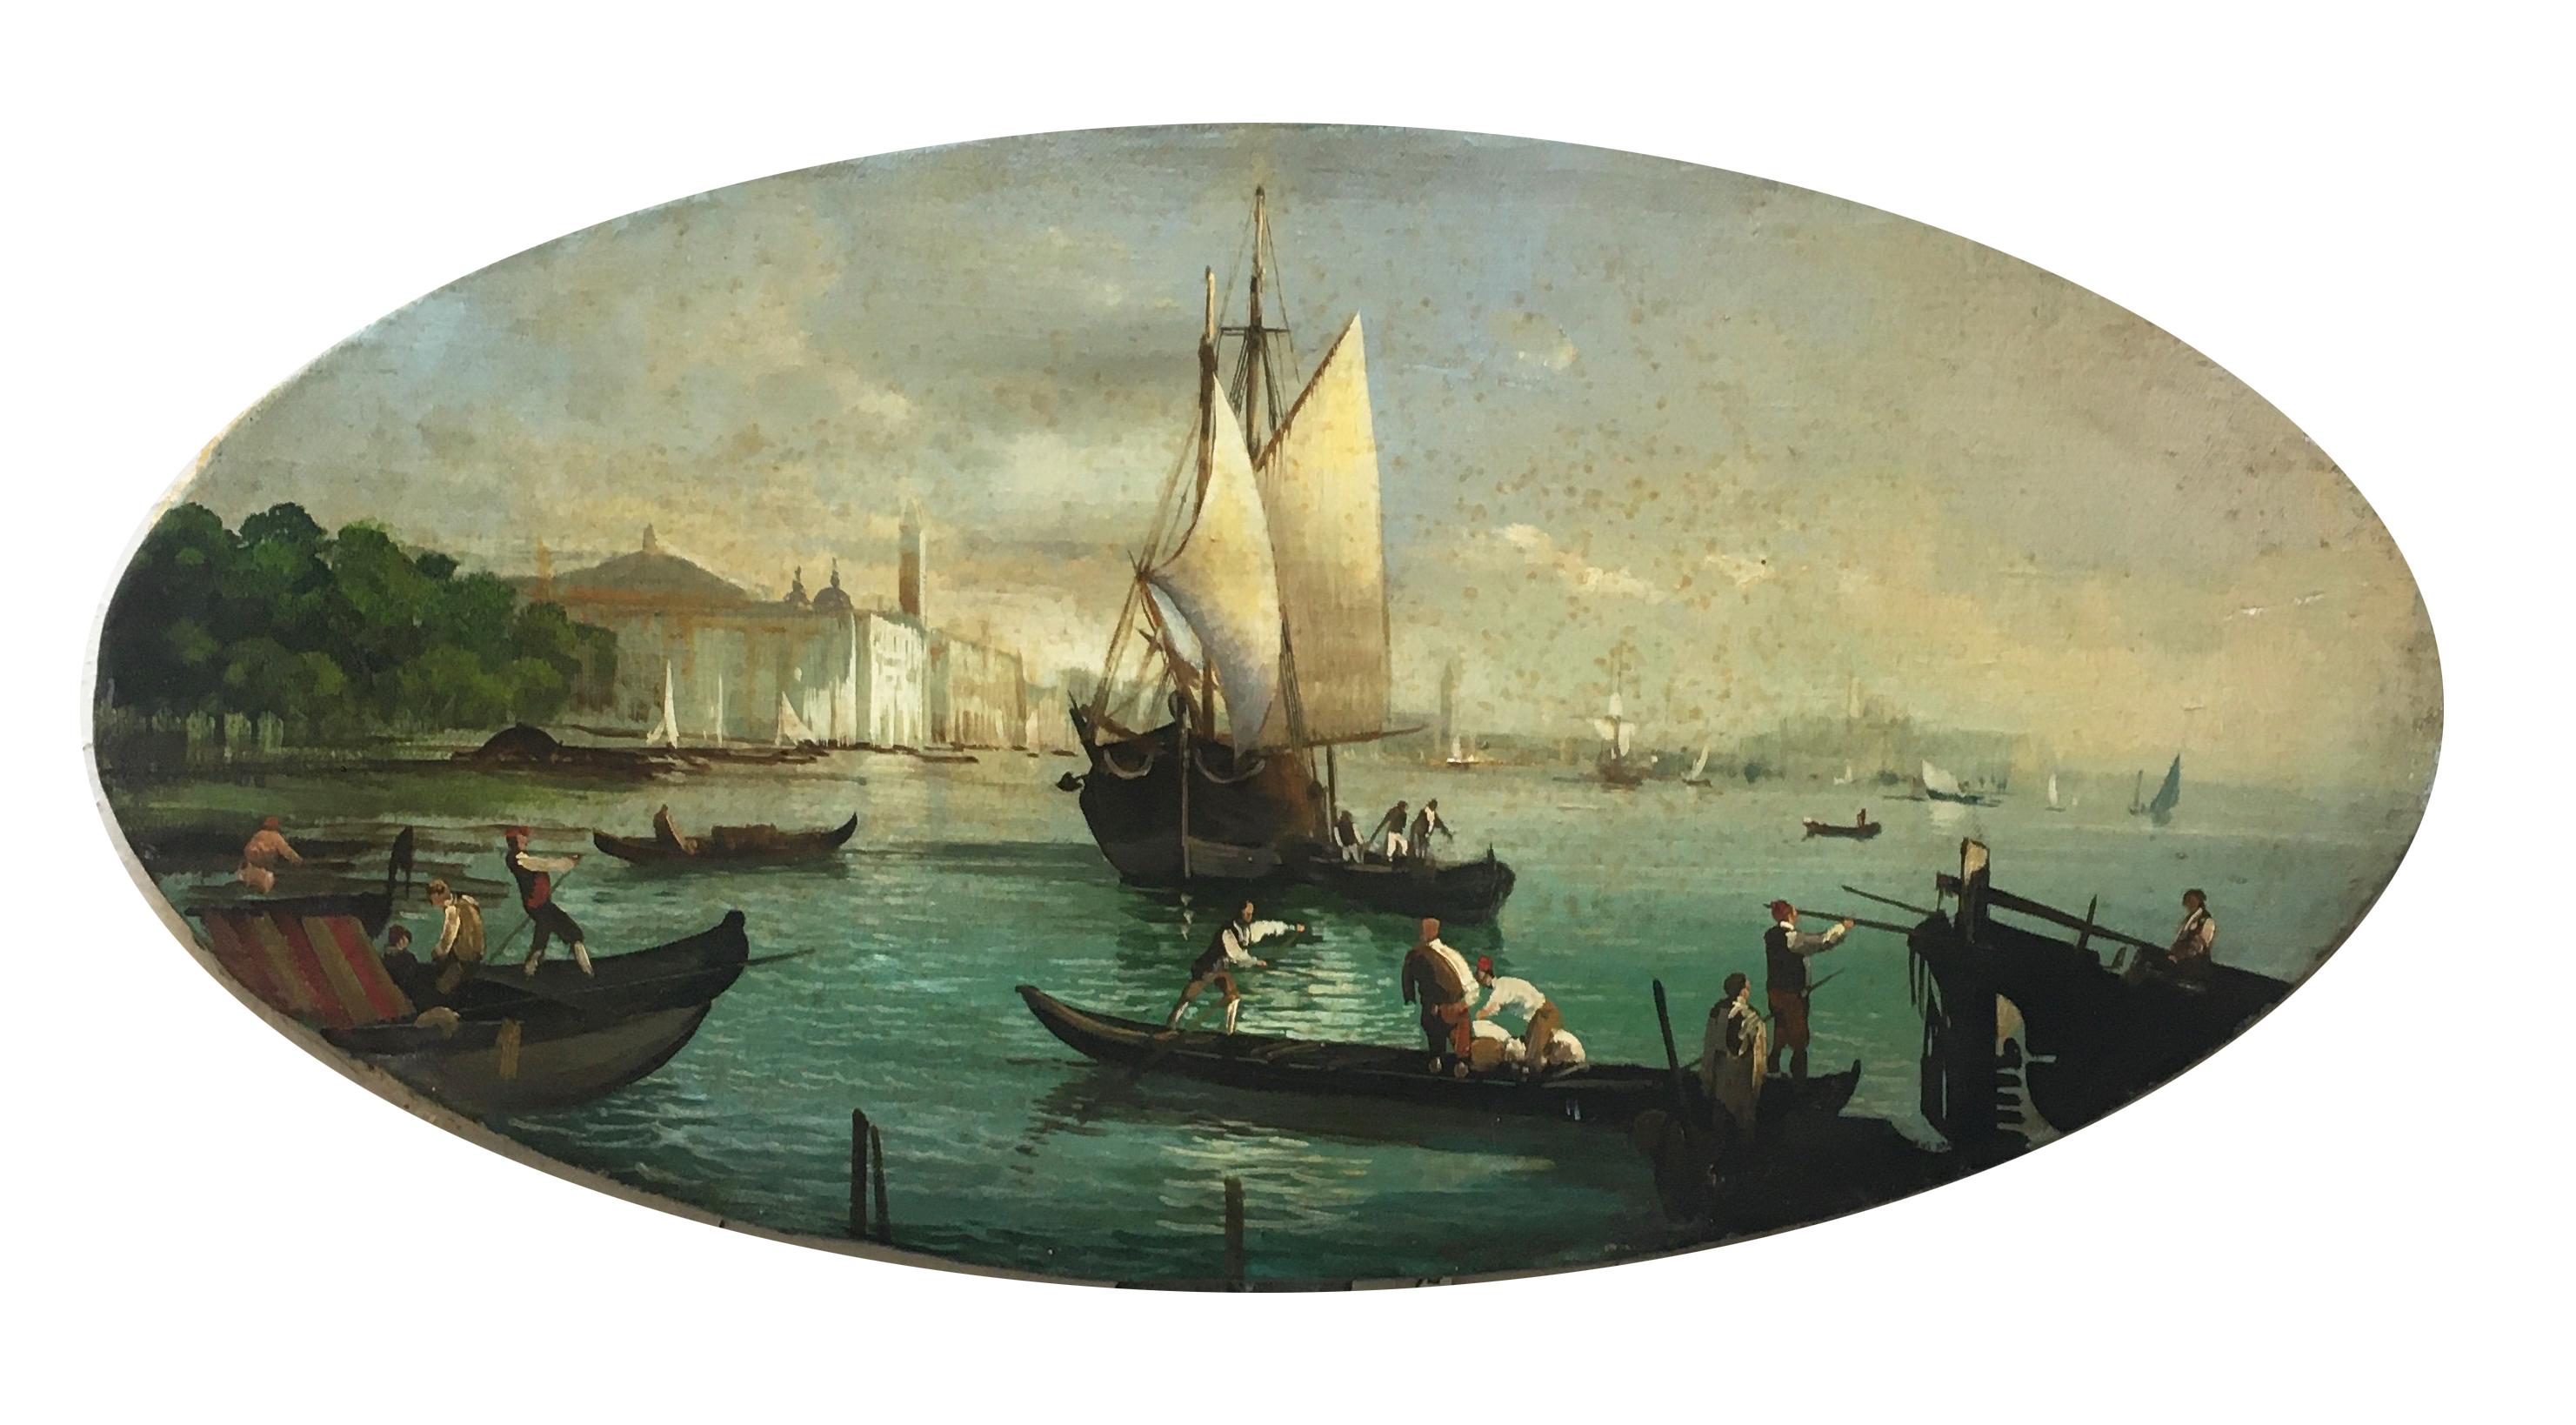 VENICE - Gianluca Gorini - Peinture de paysage italien à l'huile sur toile - Painting de Giancarlo Gorini